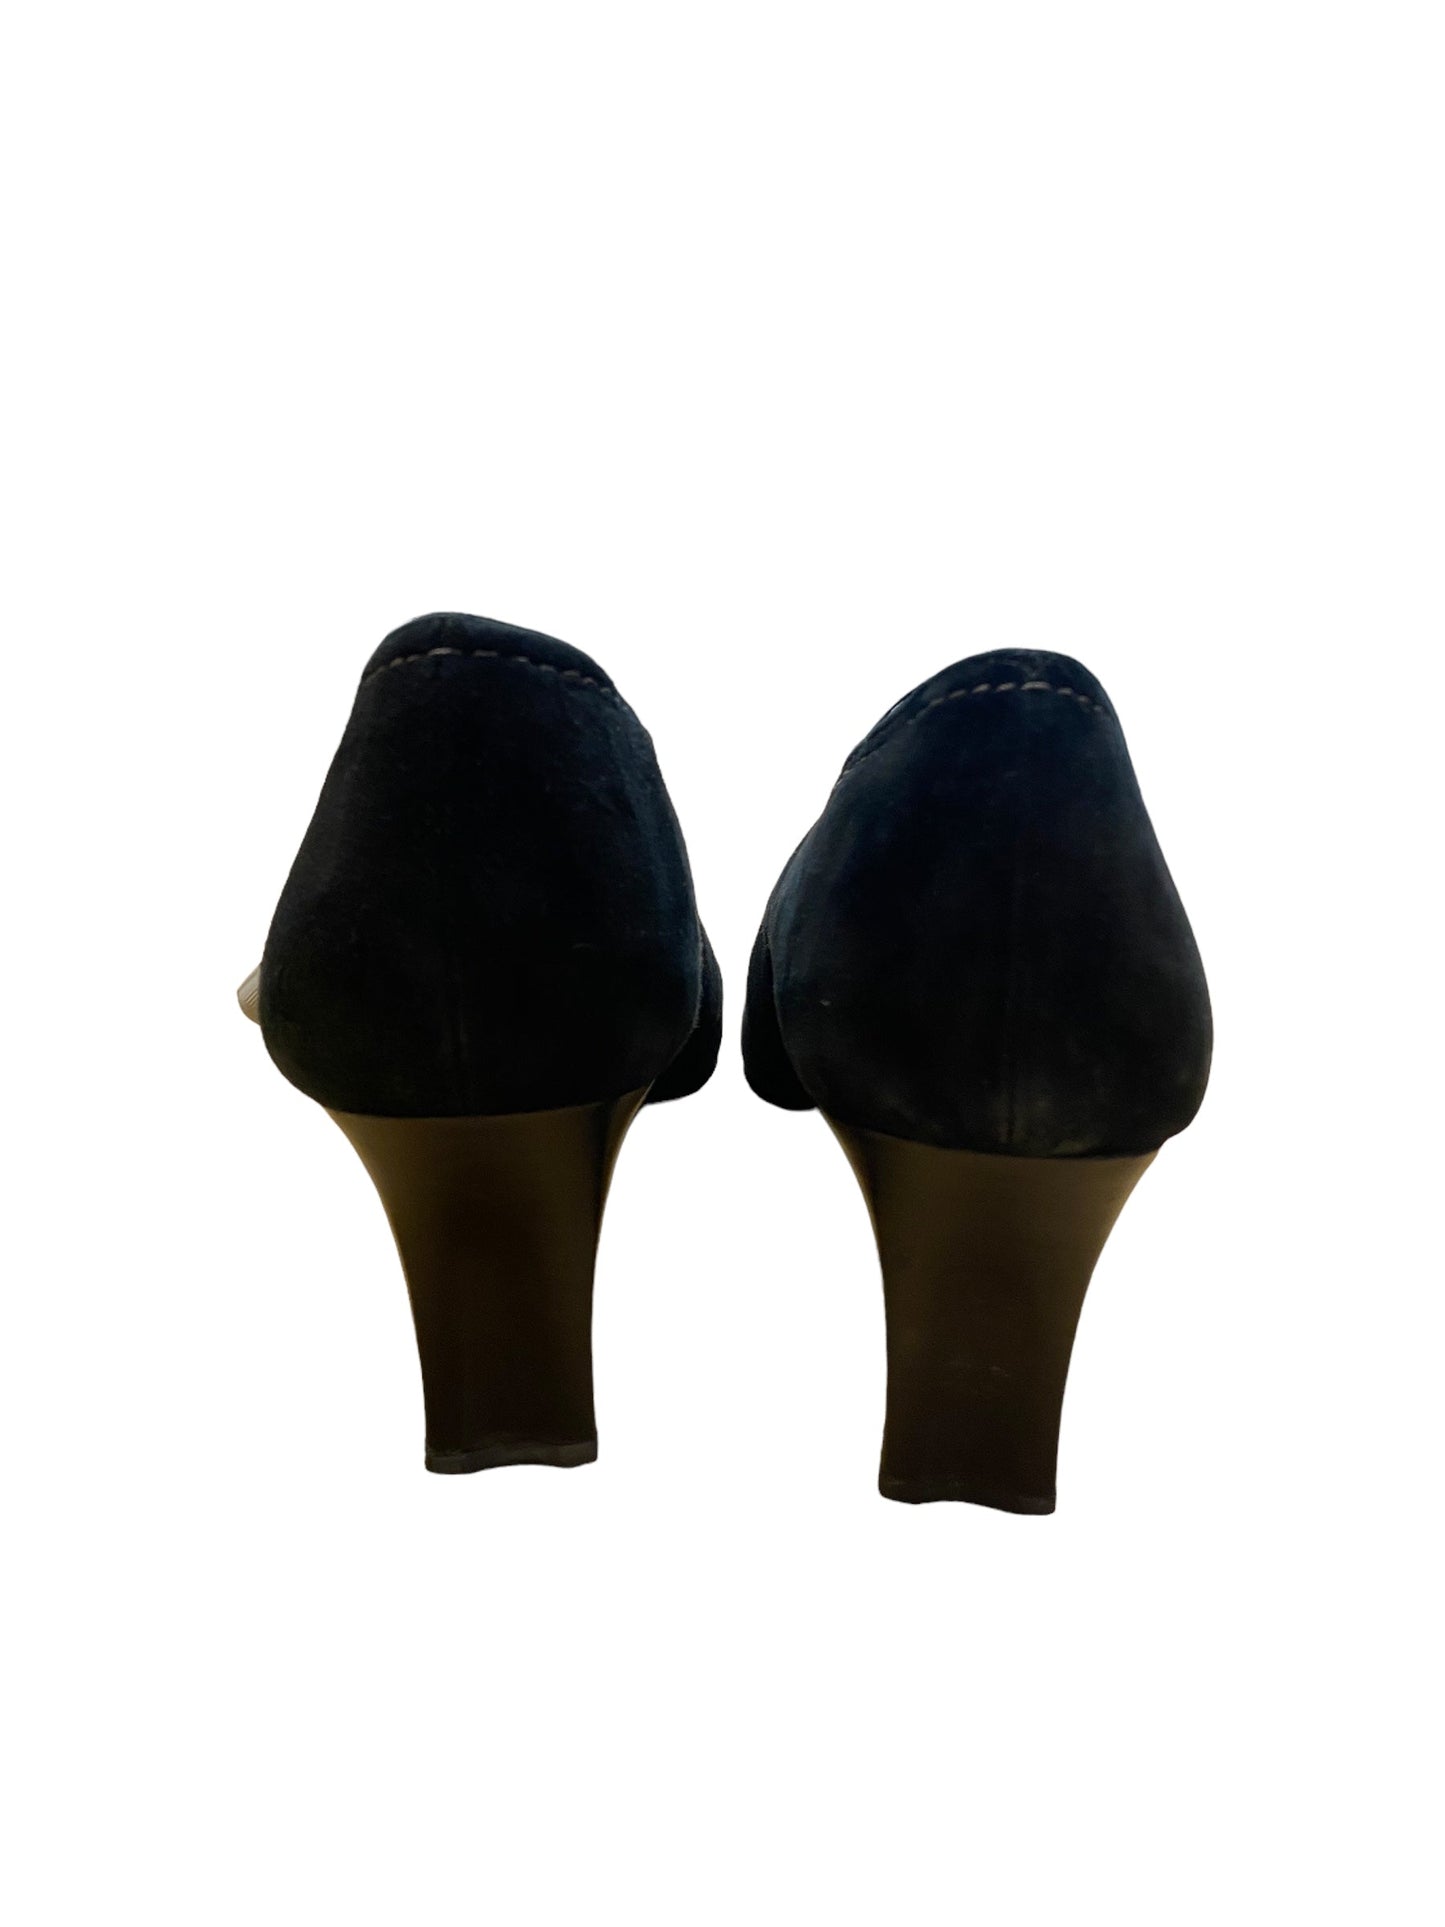 Black Shoes Heels Block Liz Claiborne, Size 8.5